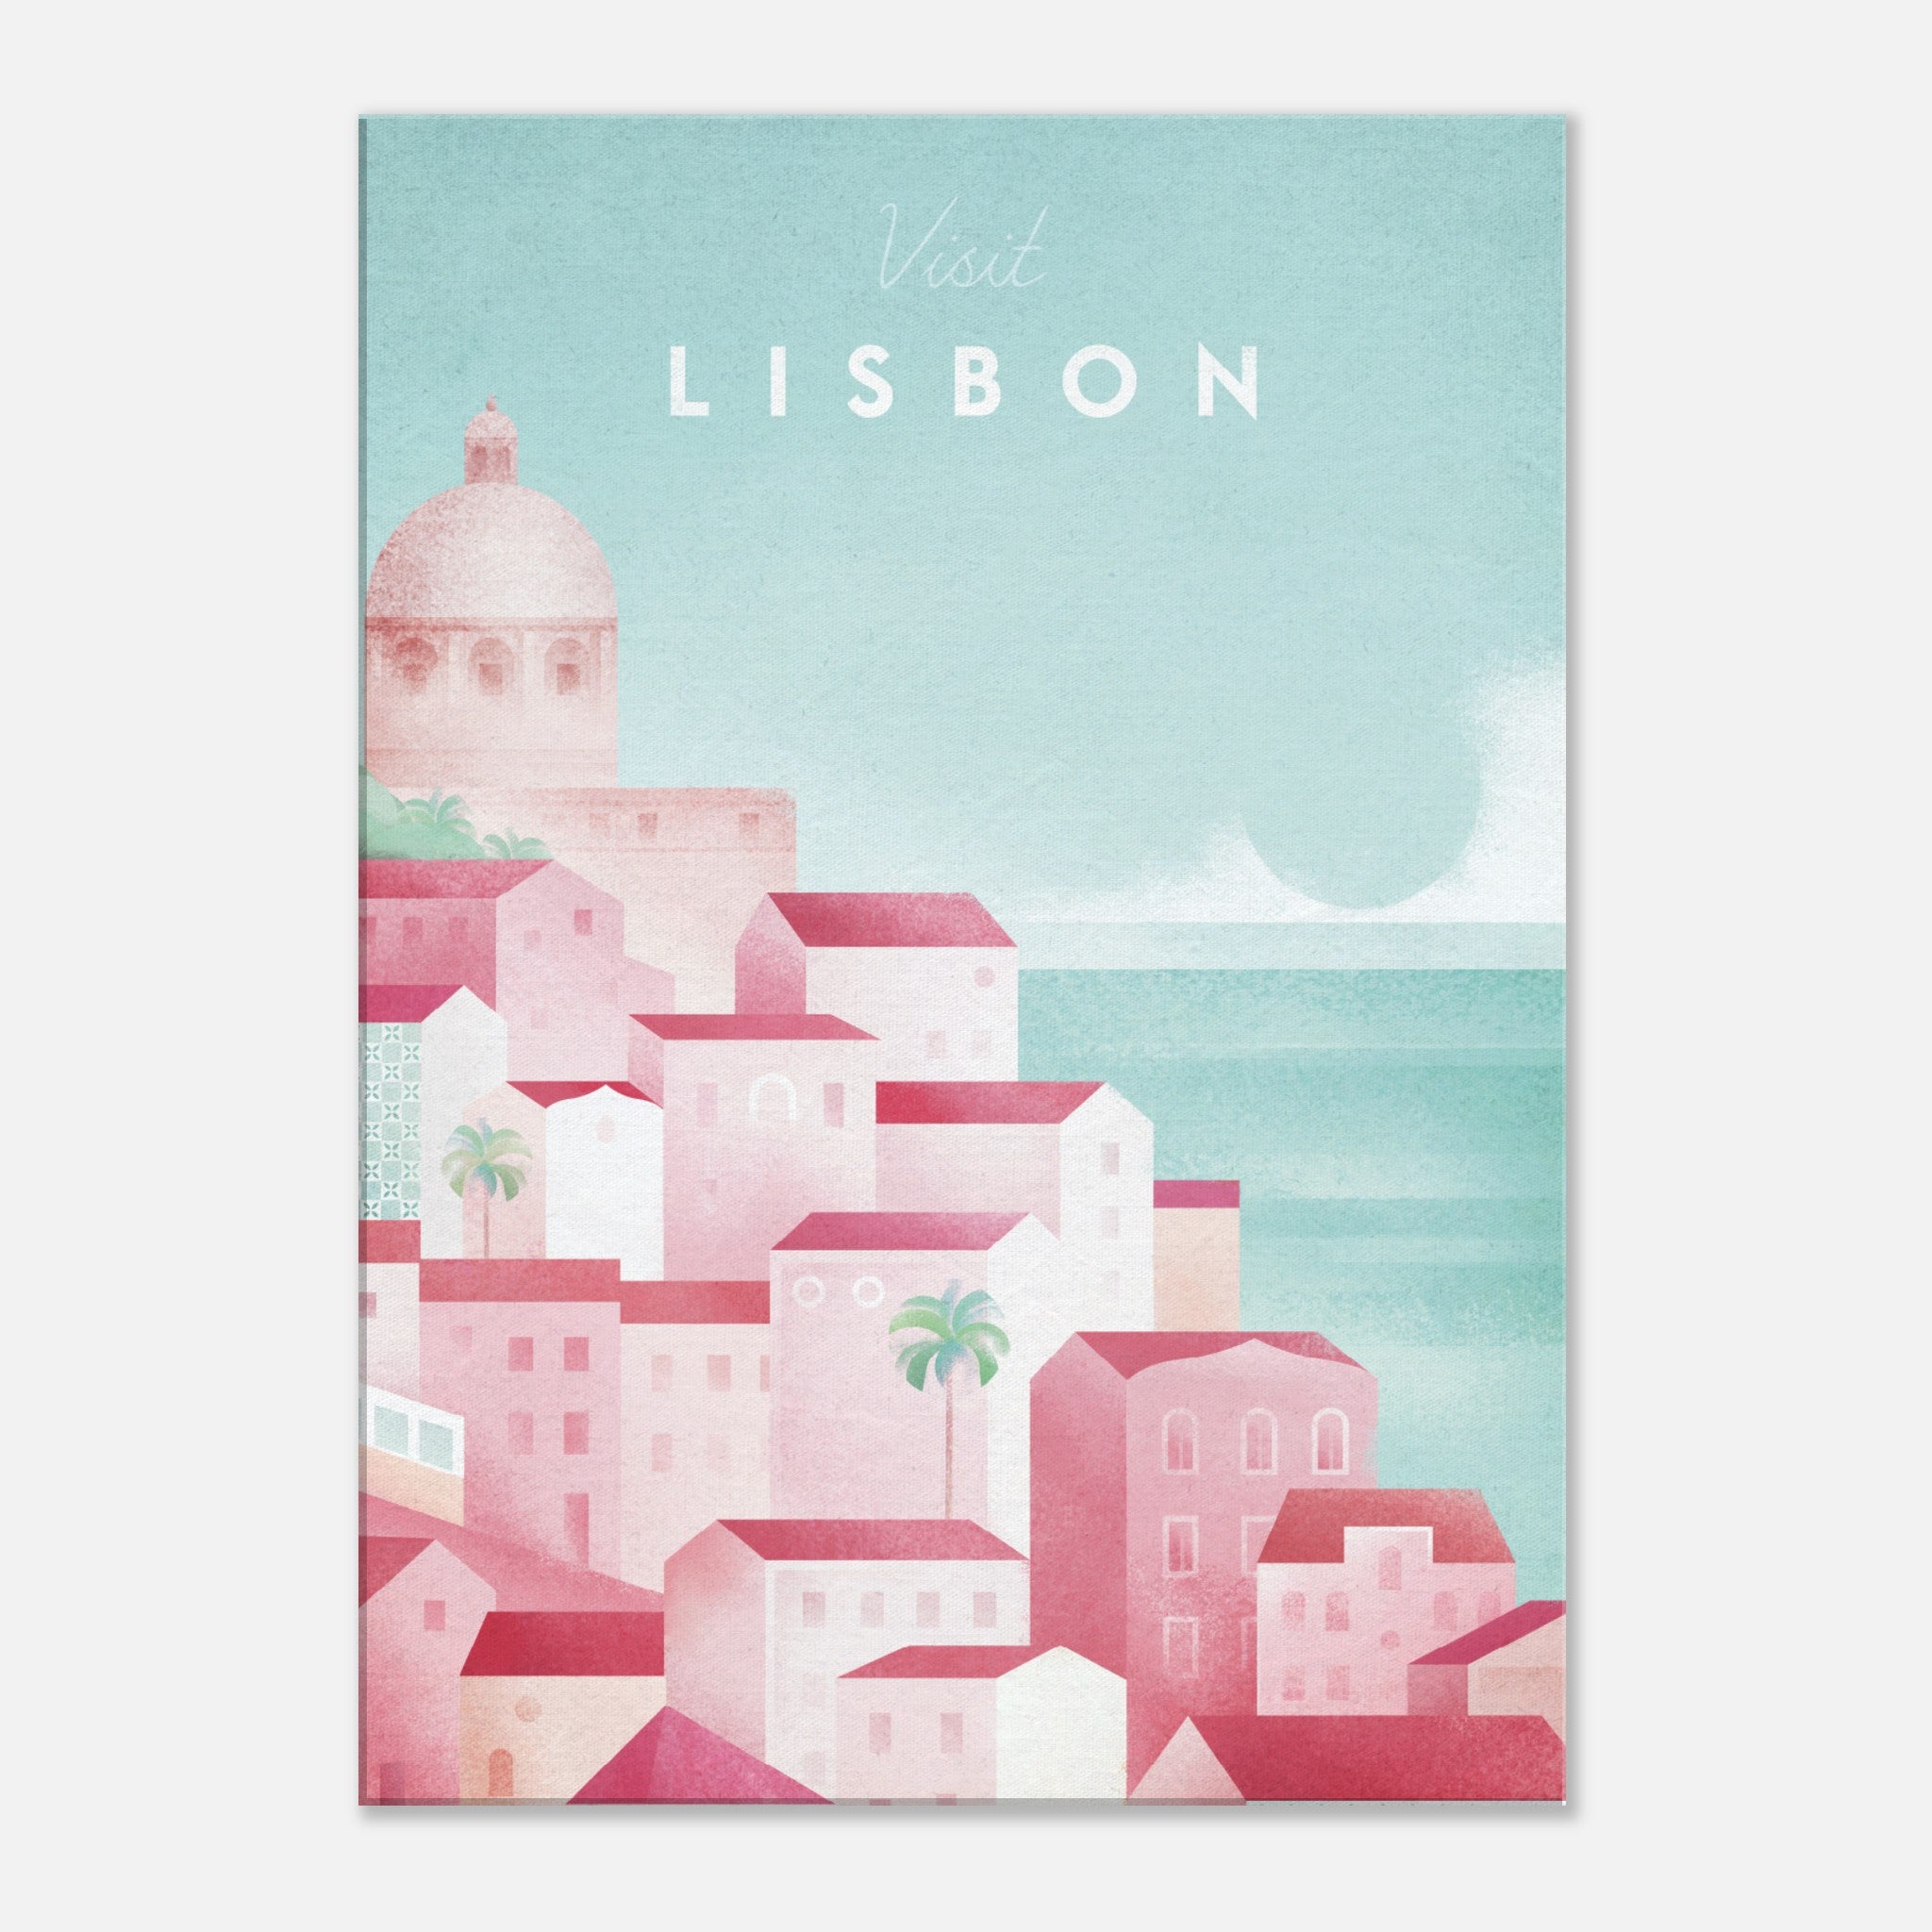 Lienzo de Lisboa